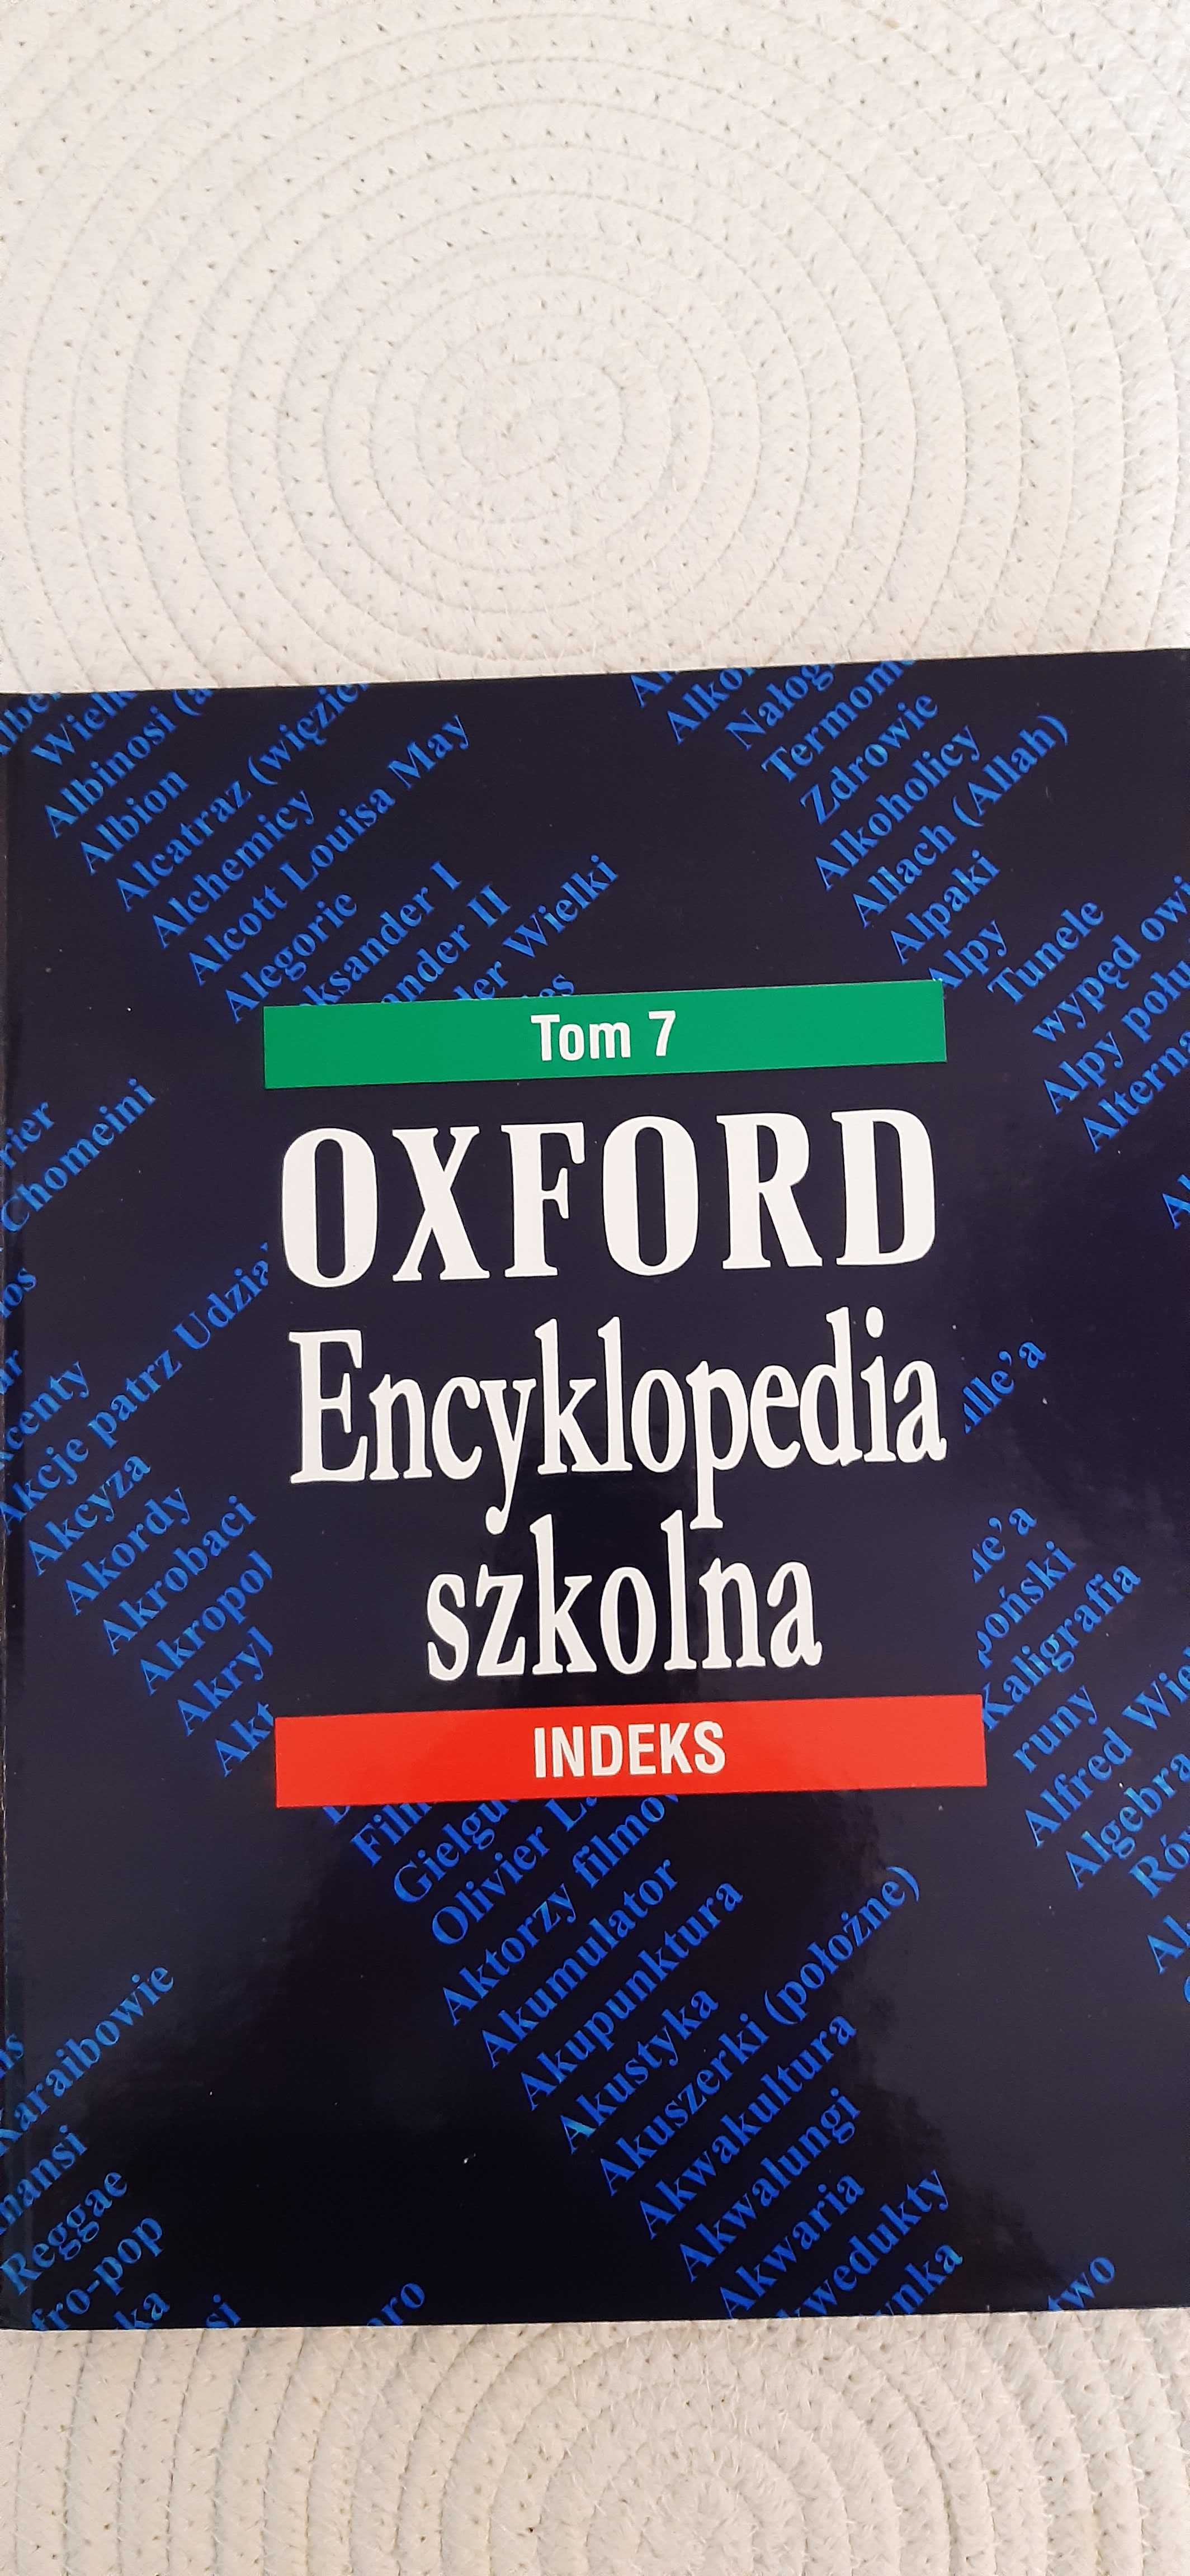 Oxford, Encyklopedia Szkolna, 6 tomów  plus  indeks Mary  Worrall